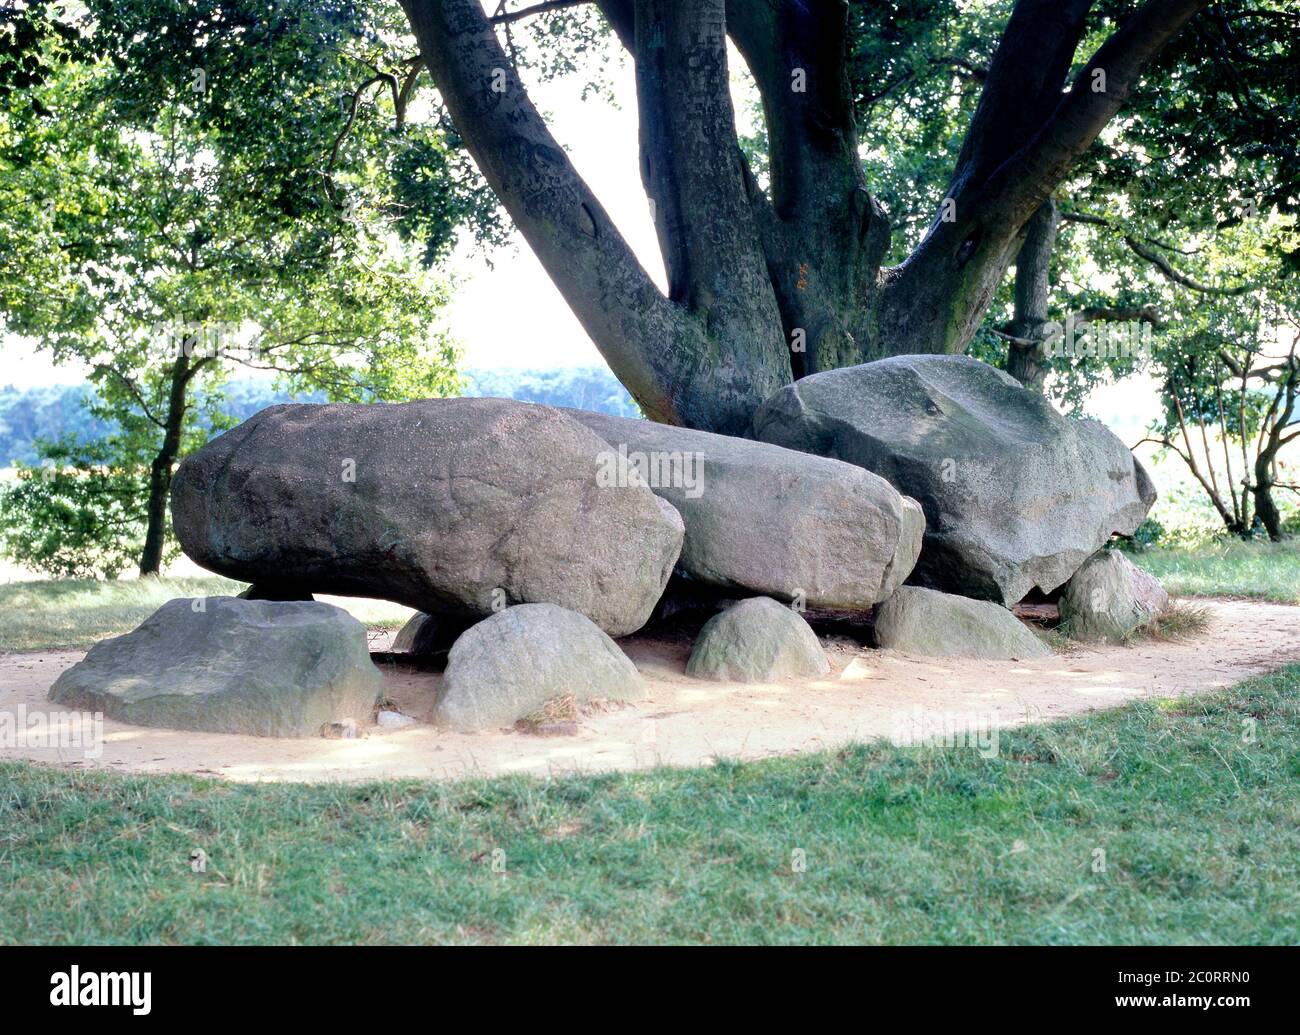 dolmen préhistorique, hunebed, à Borger, Drente (Drenthe), pays-Bas. Tombe d'environ 5400 ans, construit autour de 3400 av. J.-C. Banque D'Images